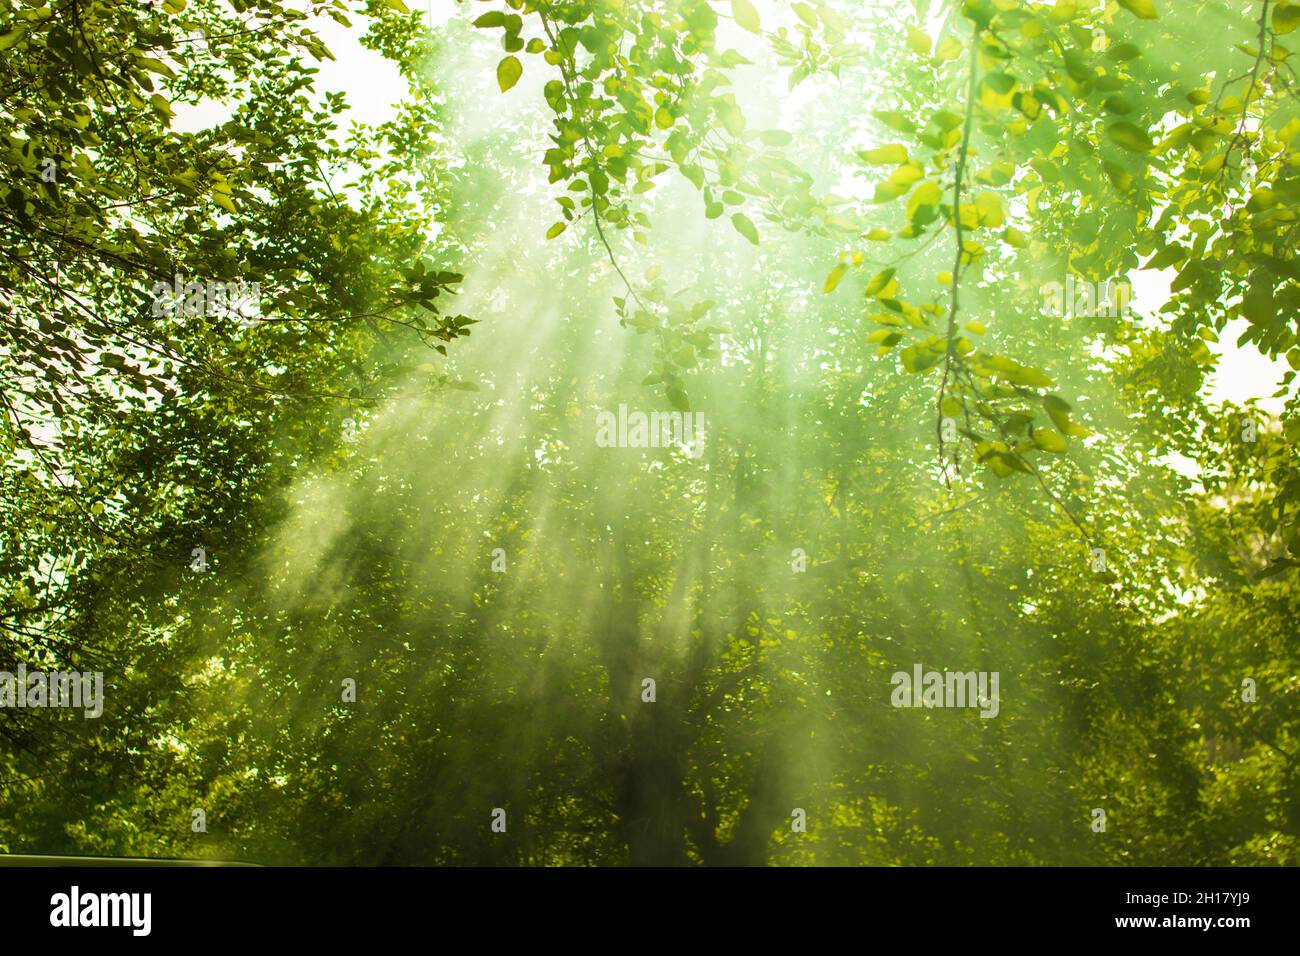 Scène de forêt verte avec poutres apparentes.Concept de la nature. Banque D'Images